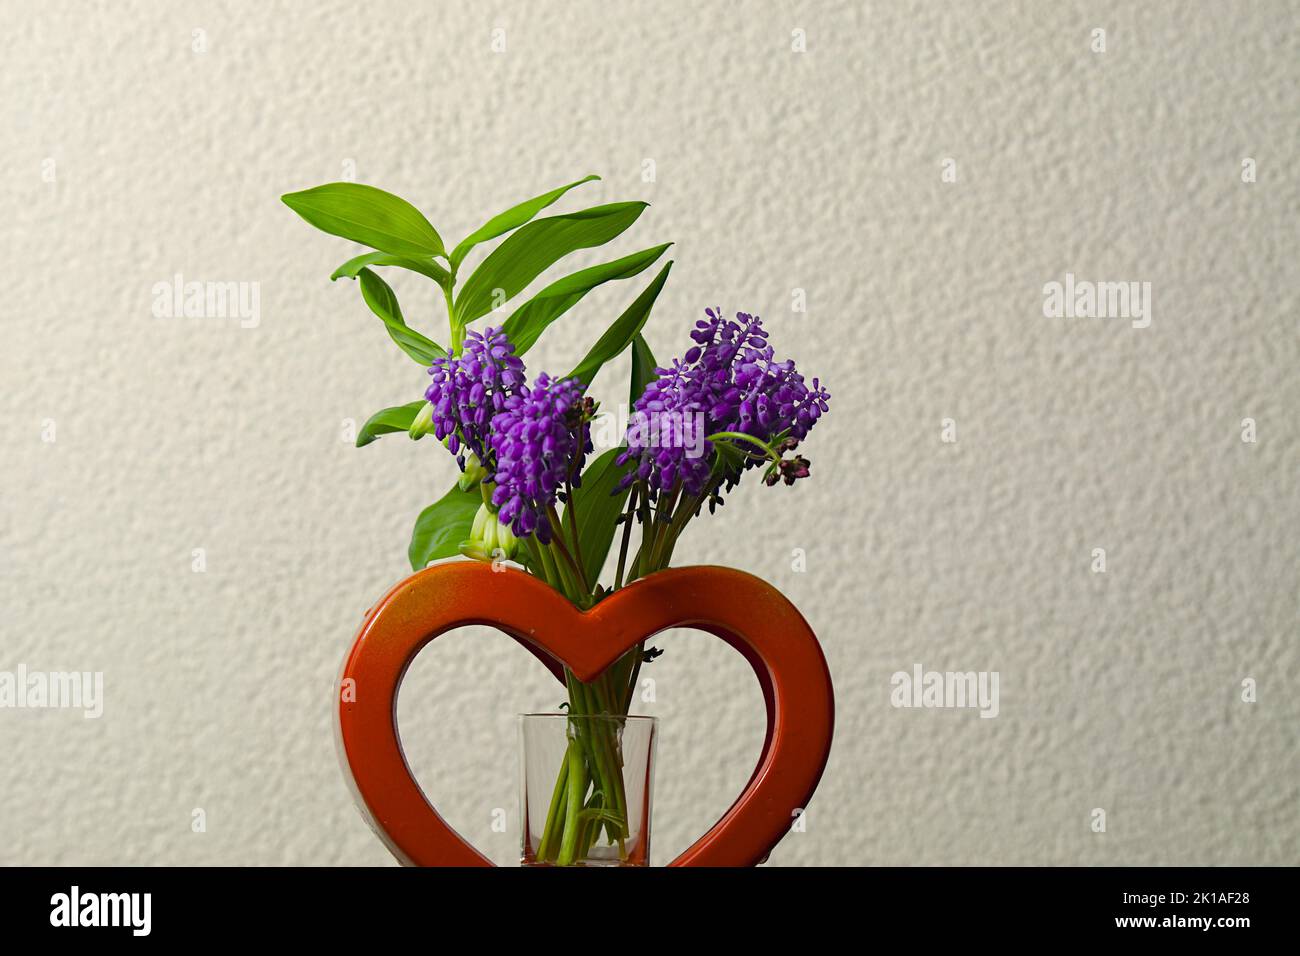 Die Hyazinthe (Hyacinthus) gehört zur Pflanzenfamilie der Spargelgewächse und zählt zu den Frühblühern. Die krautige Pflanze bildet traubige Blütenstä Stock Photo